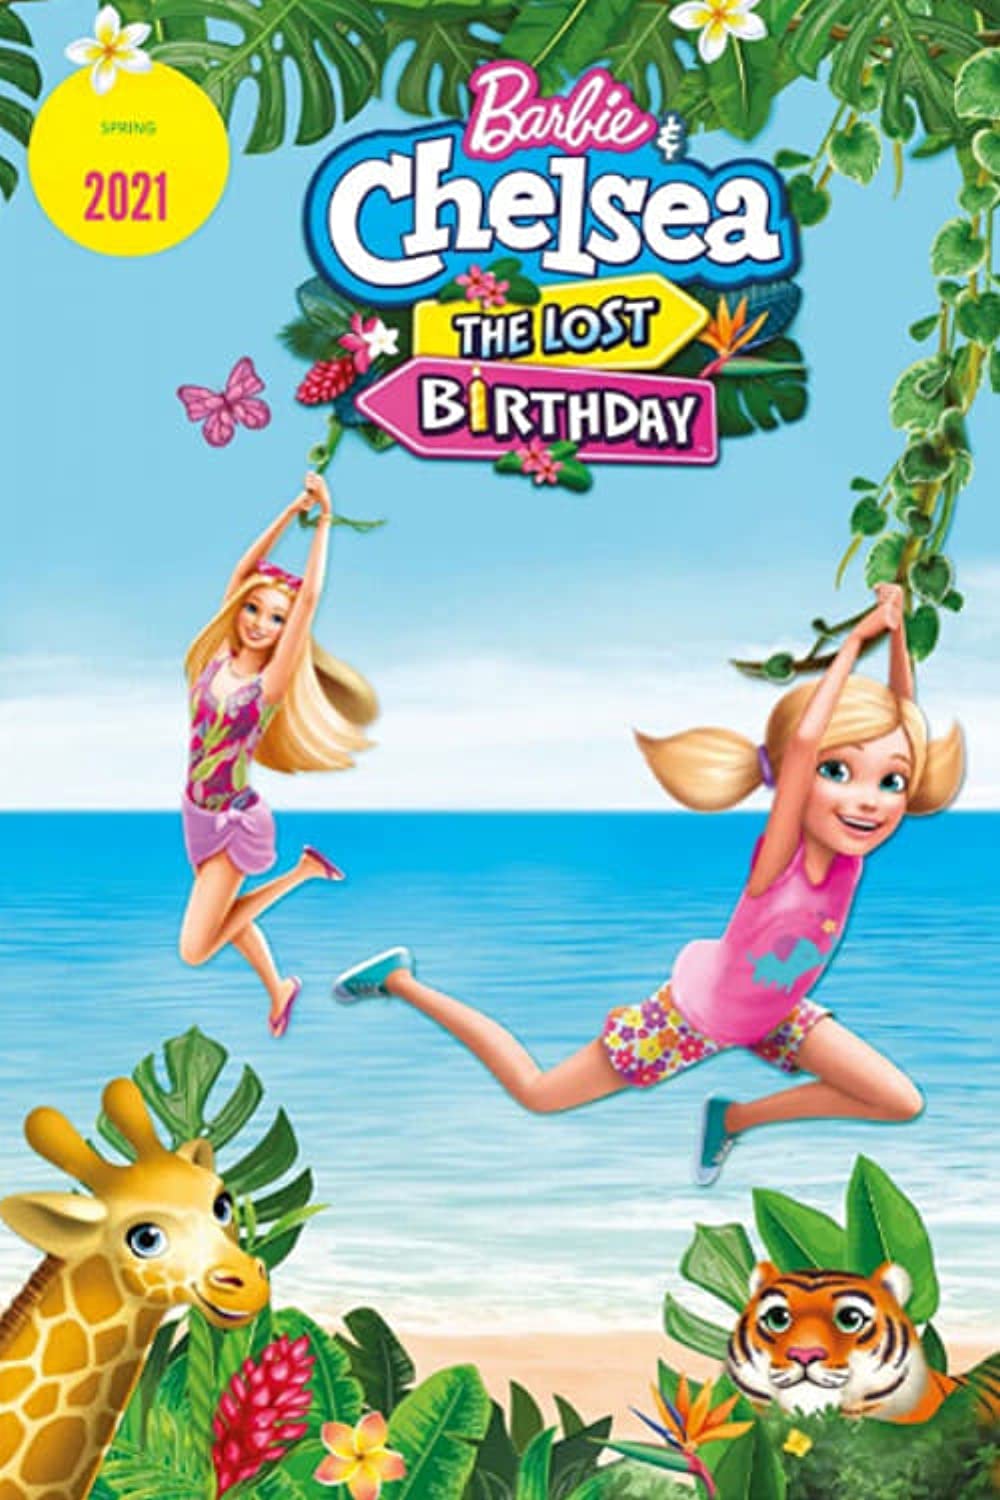 ดูหนังออนไลน์ฟรี Barbie & Chelsea The Lost Birthday (2021) บาร์บี้กับเชลซี วันเกิดที่หายไป [ซับไทย]